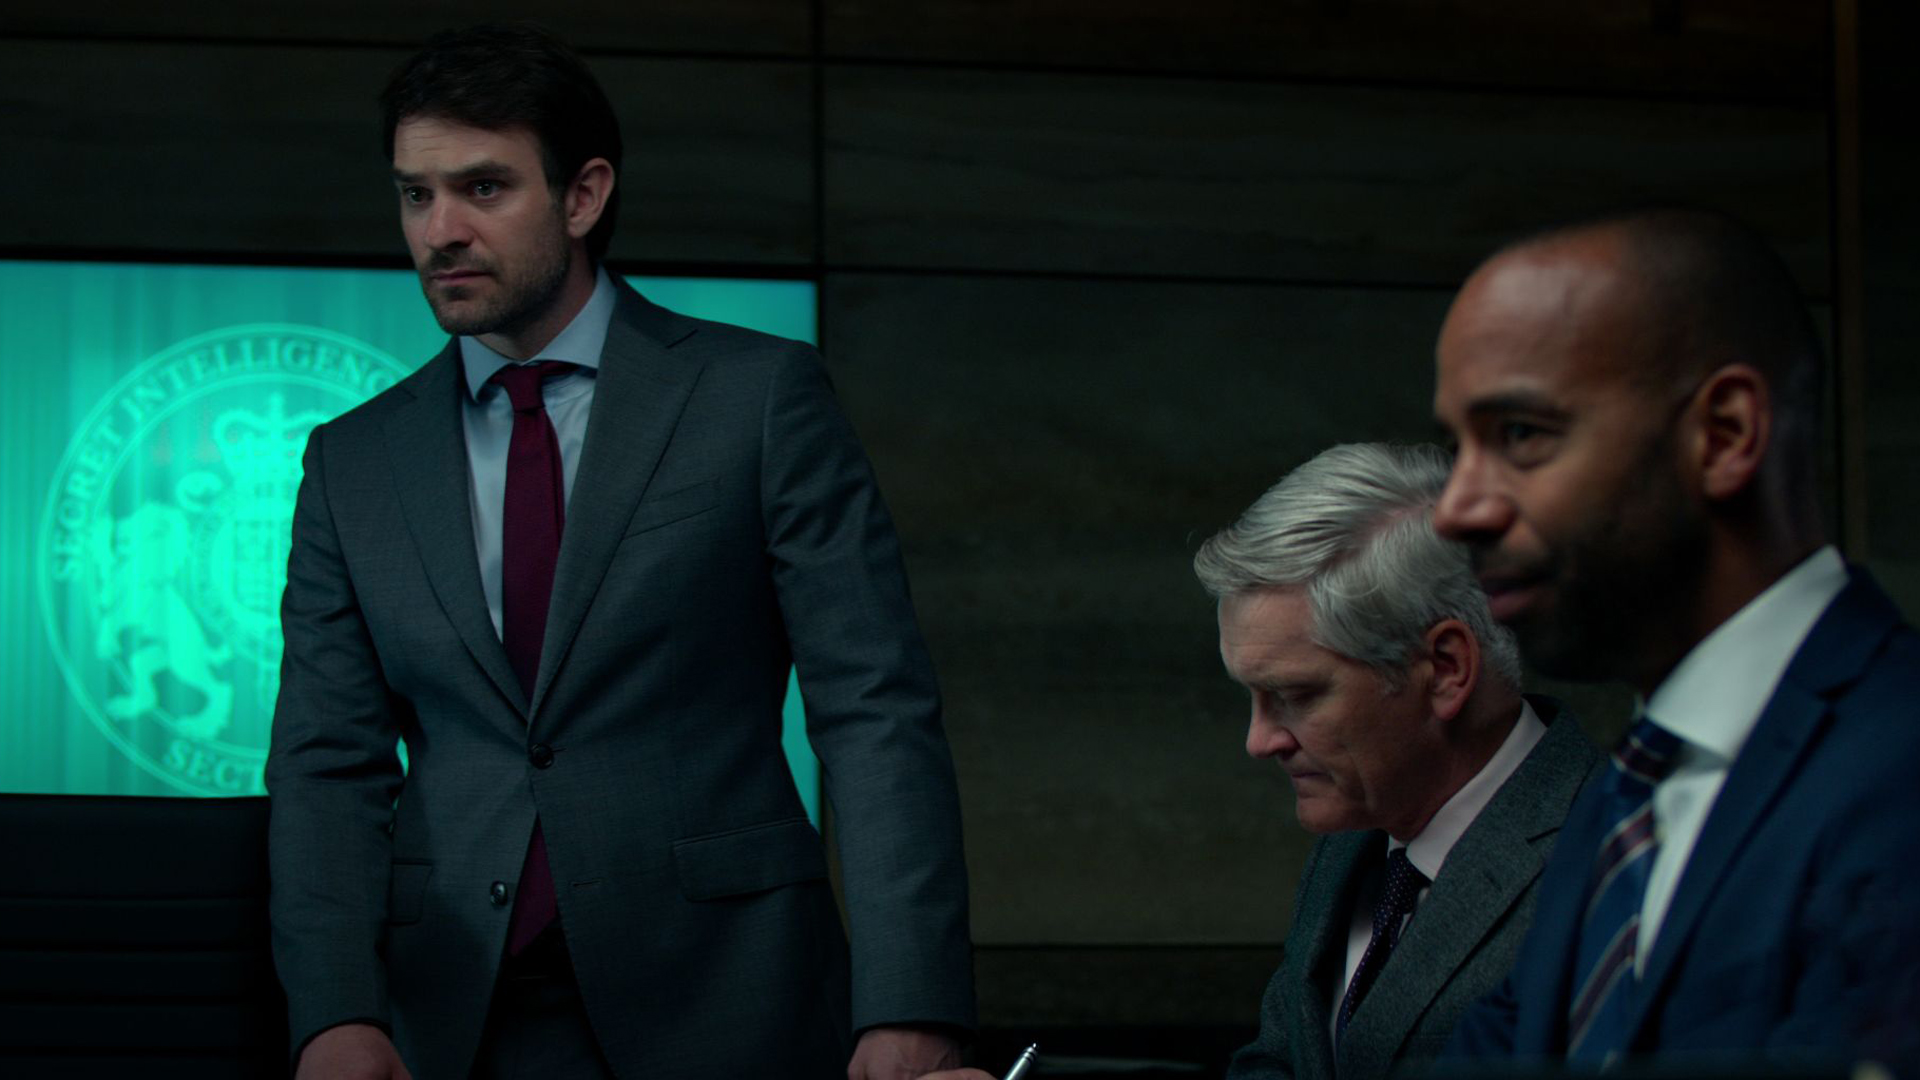 Адам Лоуренс выглядит обеспокоенным во время встречи МИ-6 в телешоу Netflix